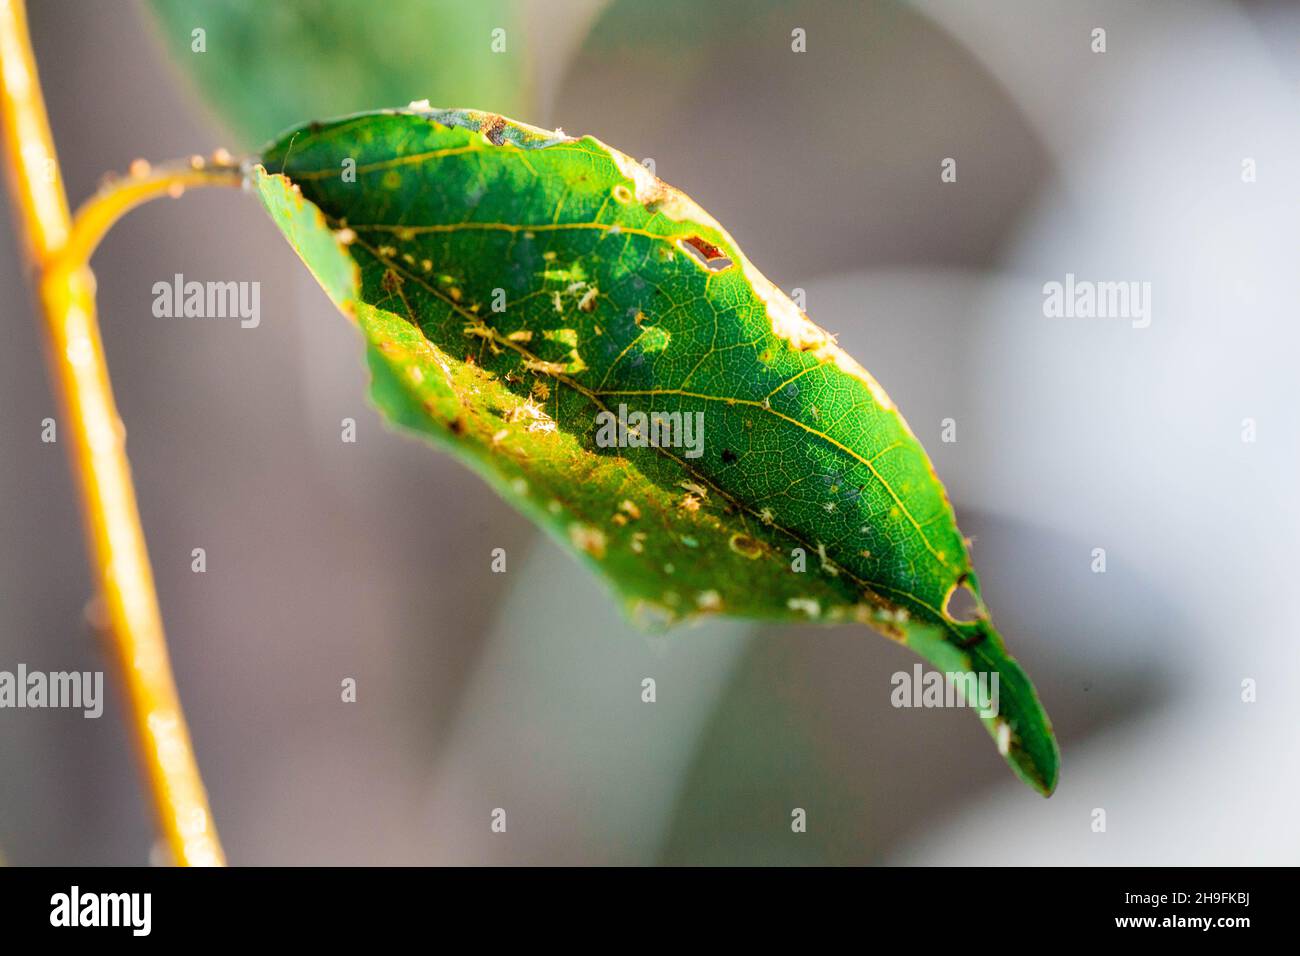 Áfidos hojas dañadas por plagas y enfermedades. La colonia Aphidoidea daña los árboles en el jardín al comer hojas. Plaga peligrosa de plantas cultivadas comiendo jugo vegetal. Foto de stock